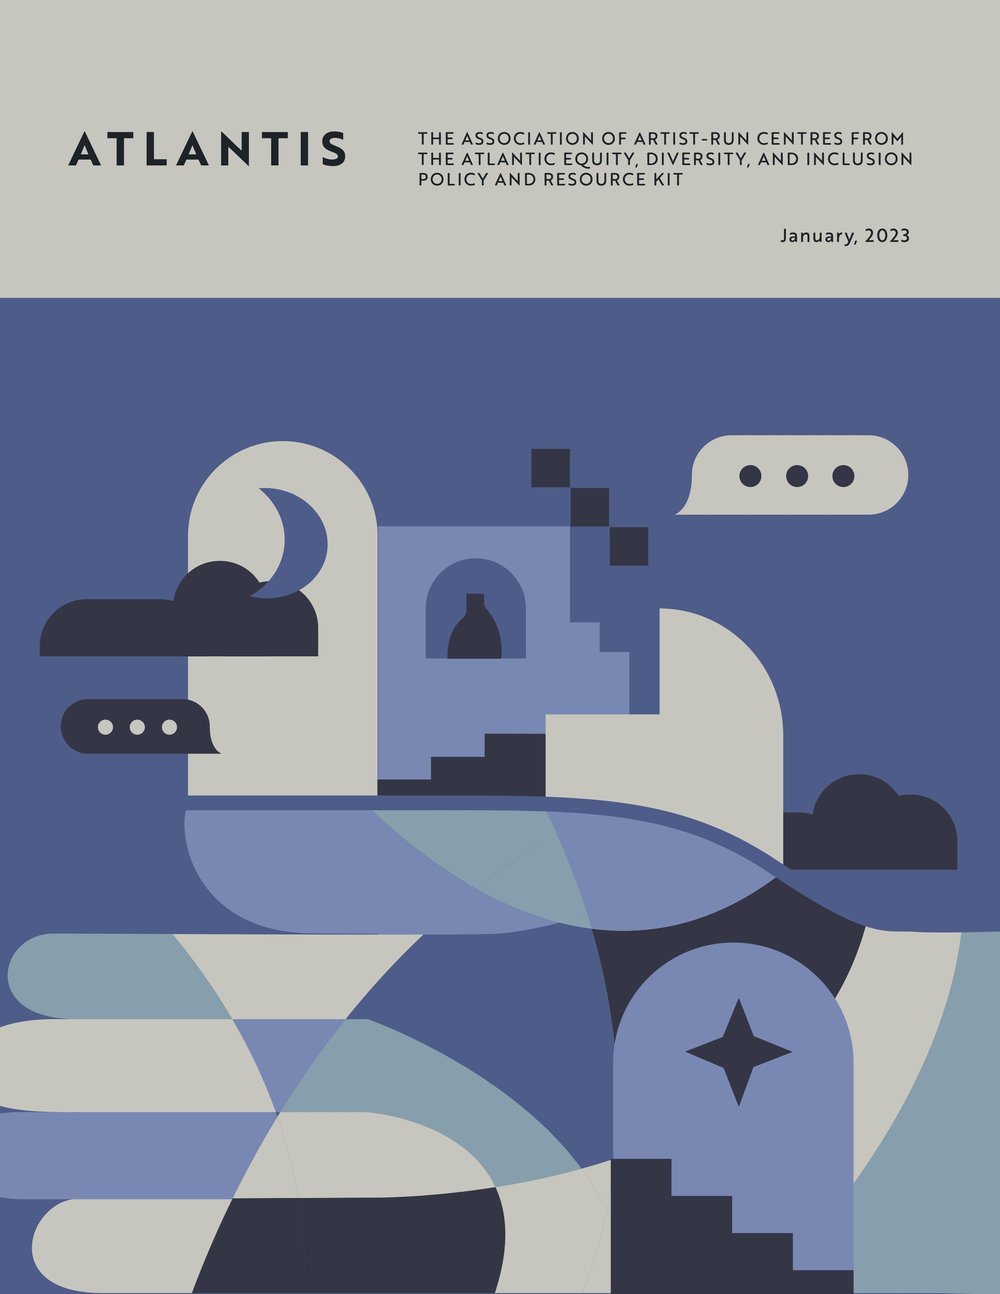 AtlantisPolicyDocument_EN_FINALrevisions.jpg